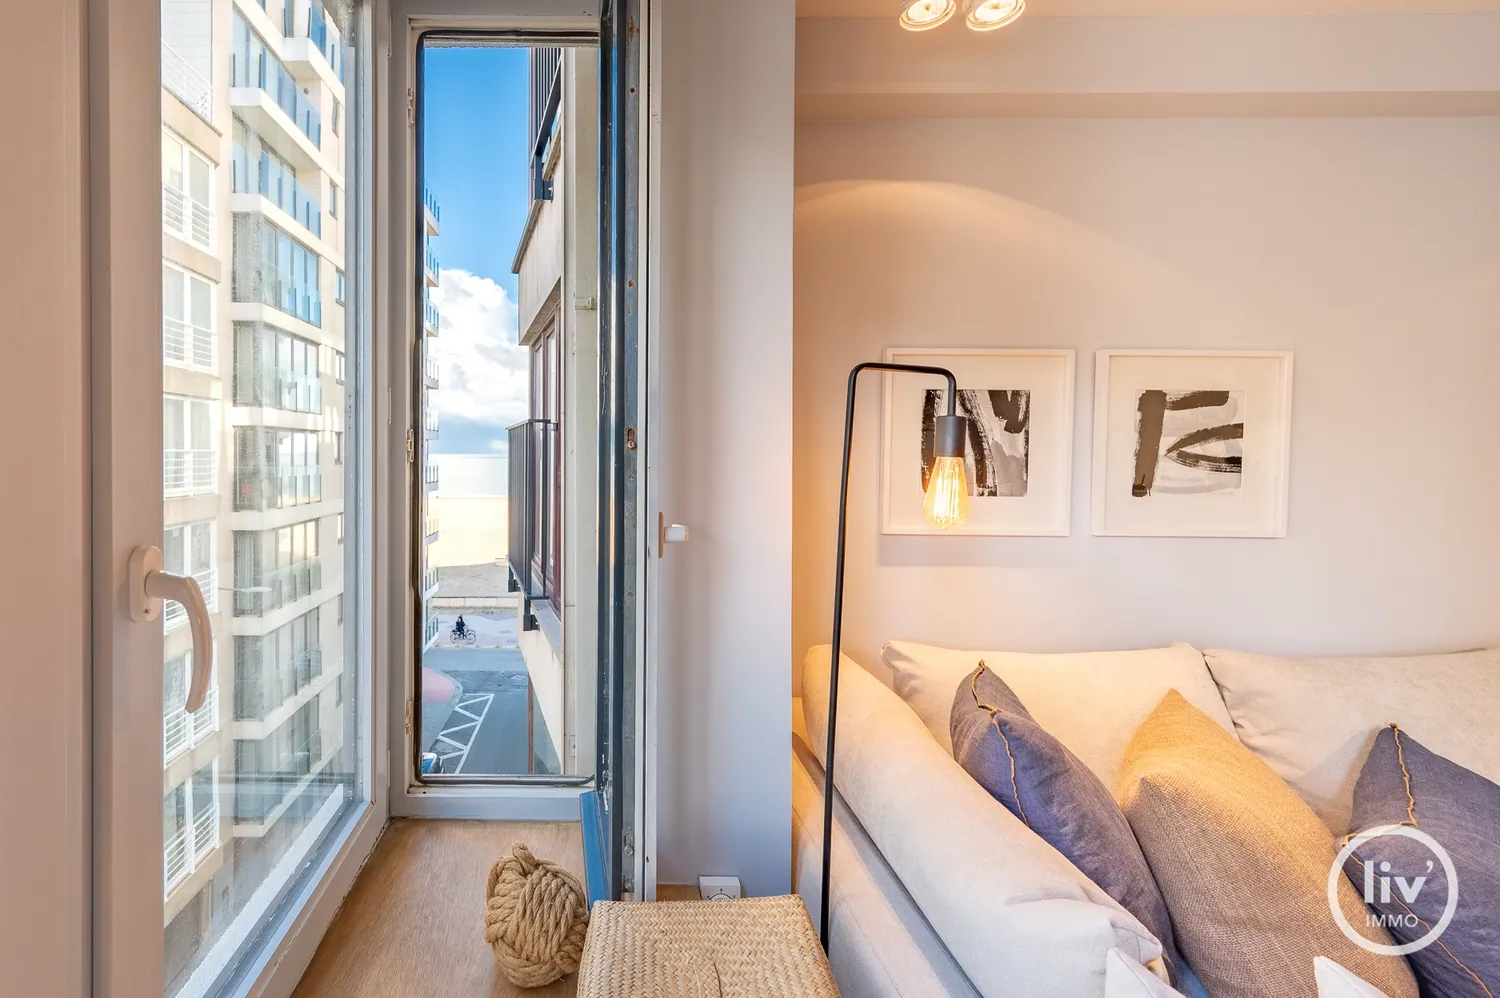 Recent gerenoveerd 2 slaapkamerappartement met zijdelings zeezicht te Duinbergen gelegen.